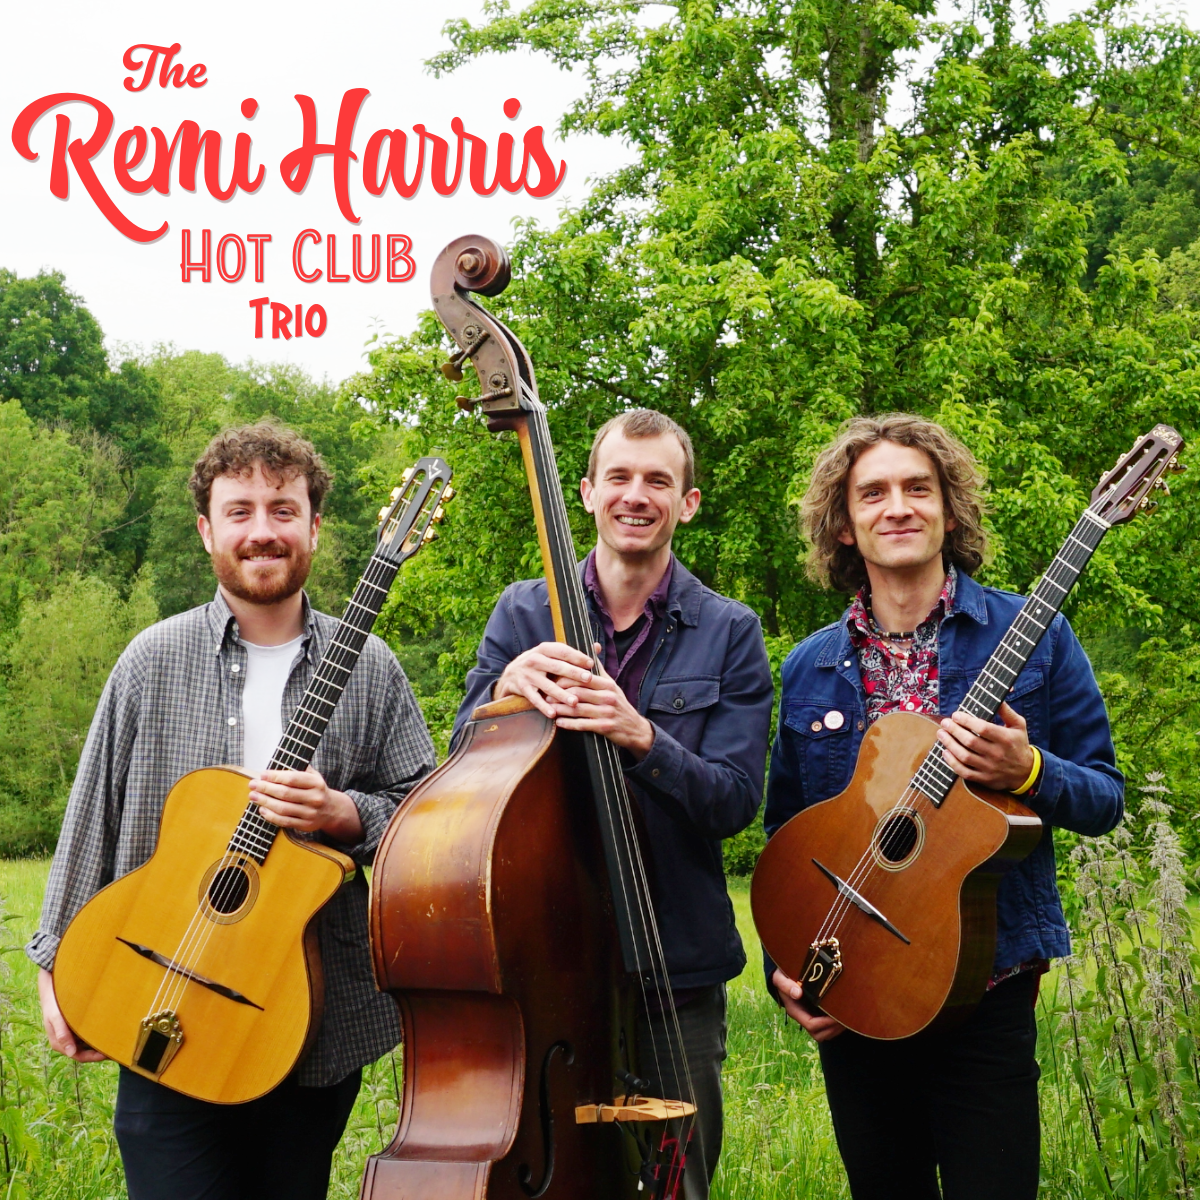 1 June: The Remi Harris Hot Club Trio